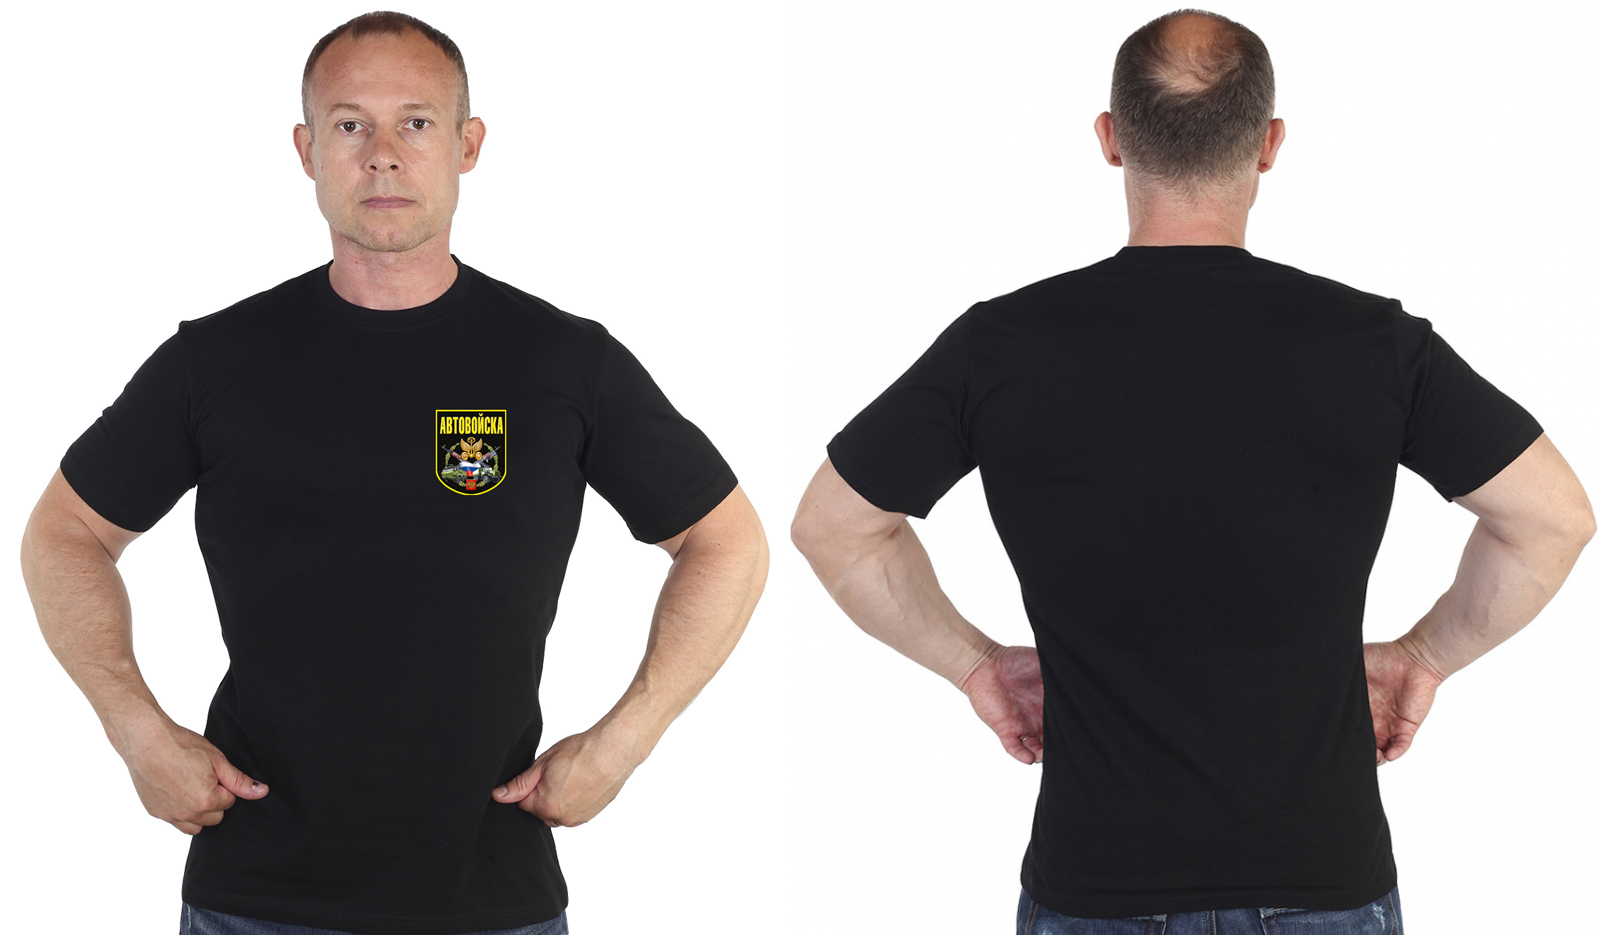 Чёрная футболка с термотрансфером "Автовойска" 